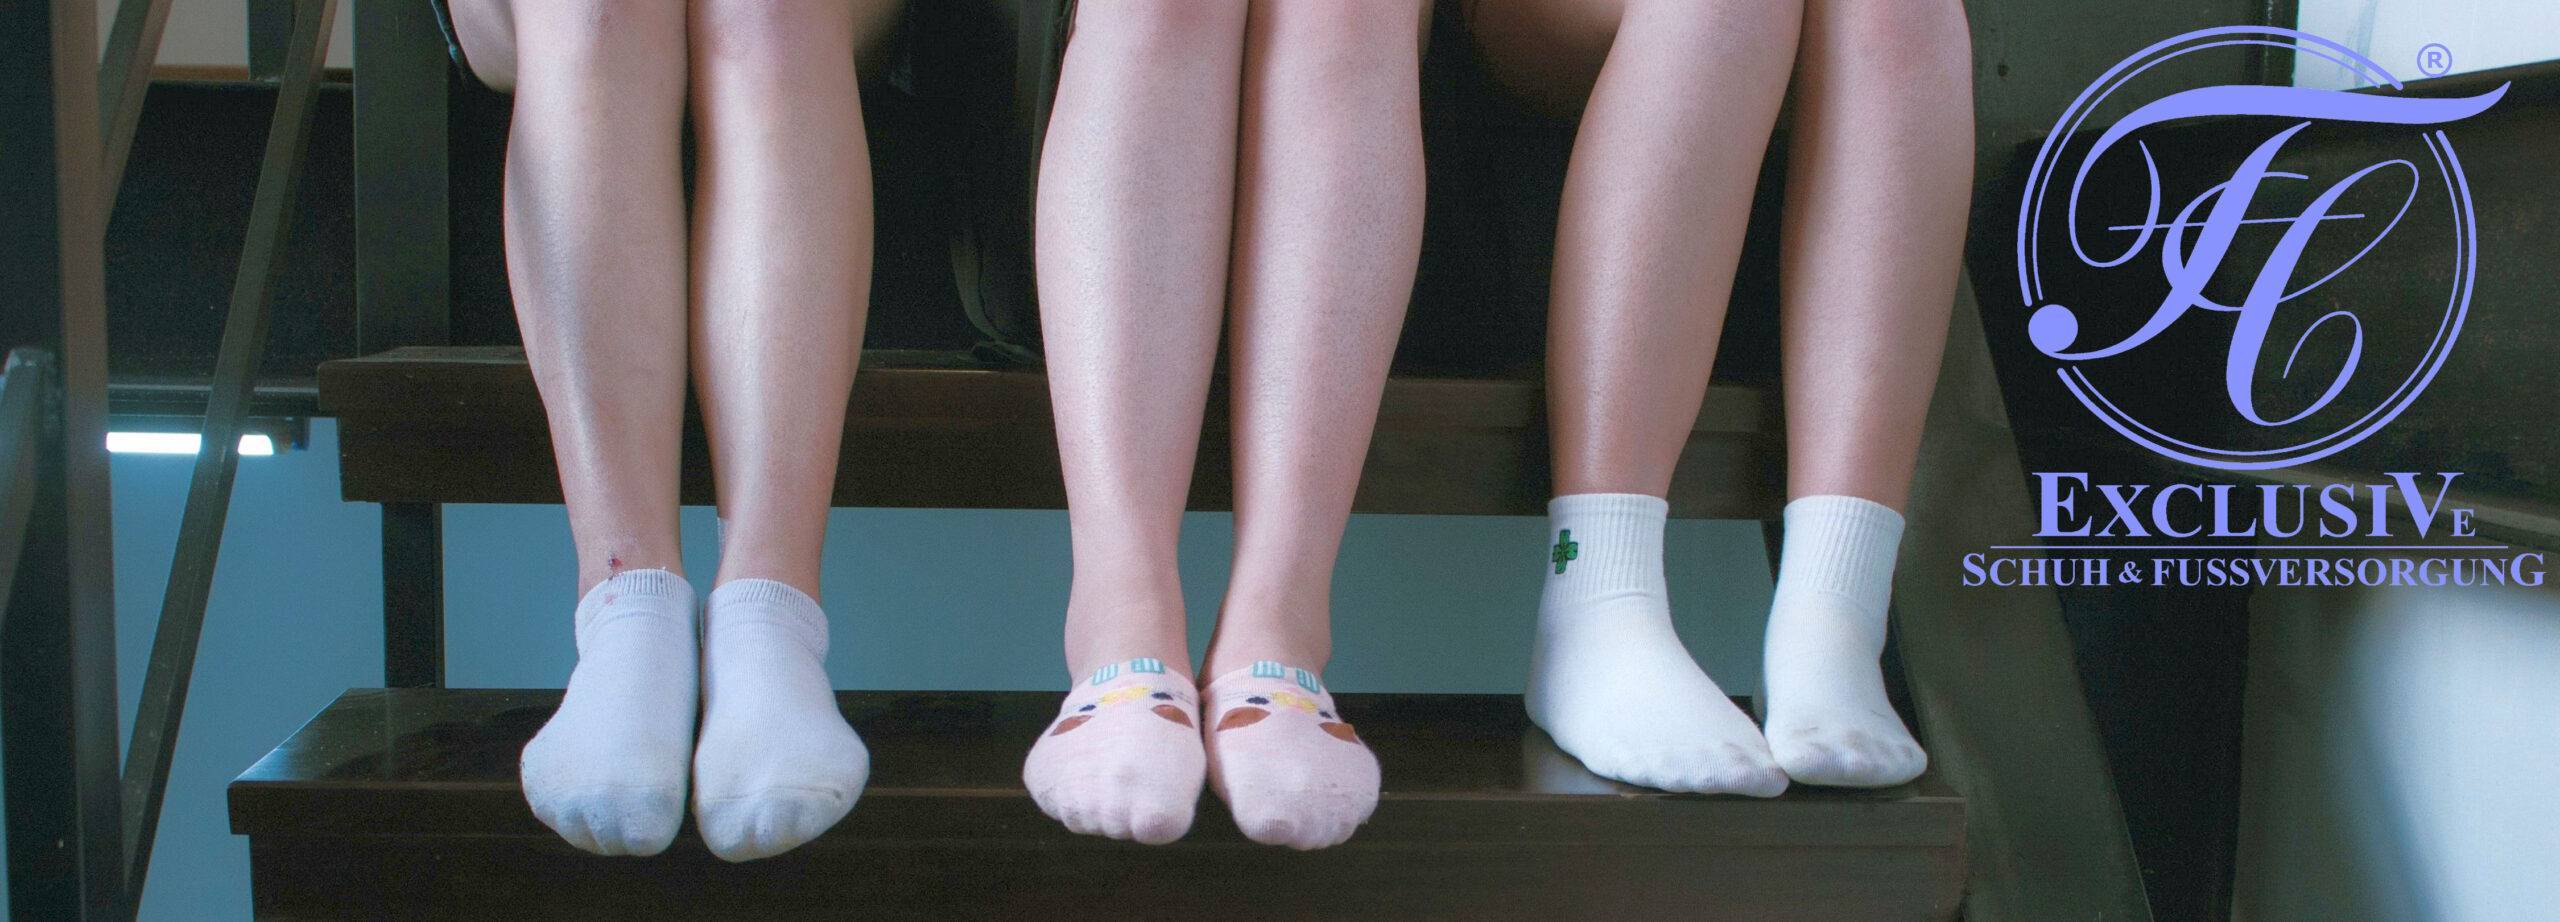 Kinder auf der Treppe, die ihre Füße in Socken präsentieren